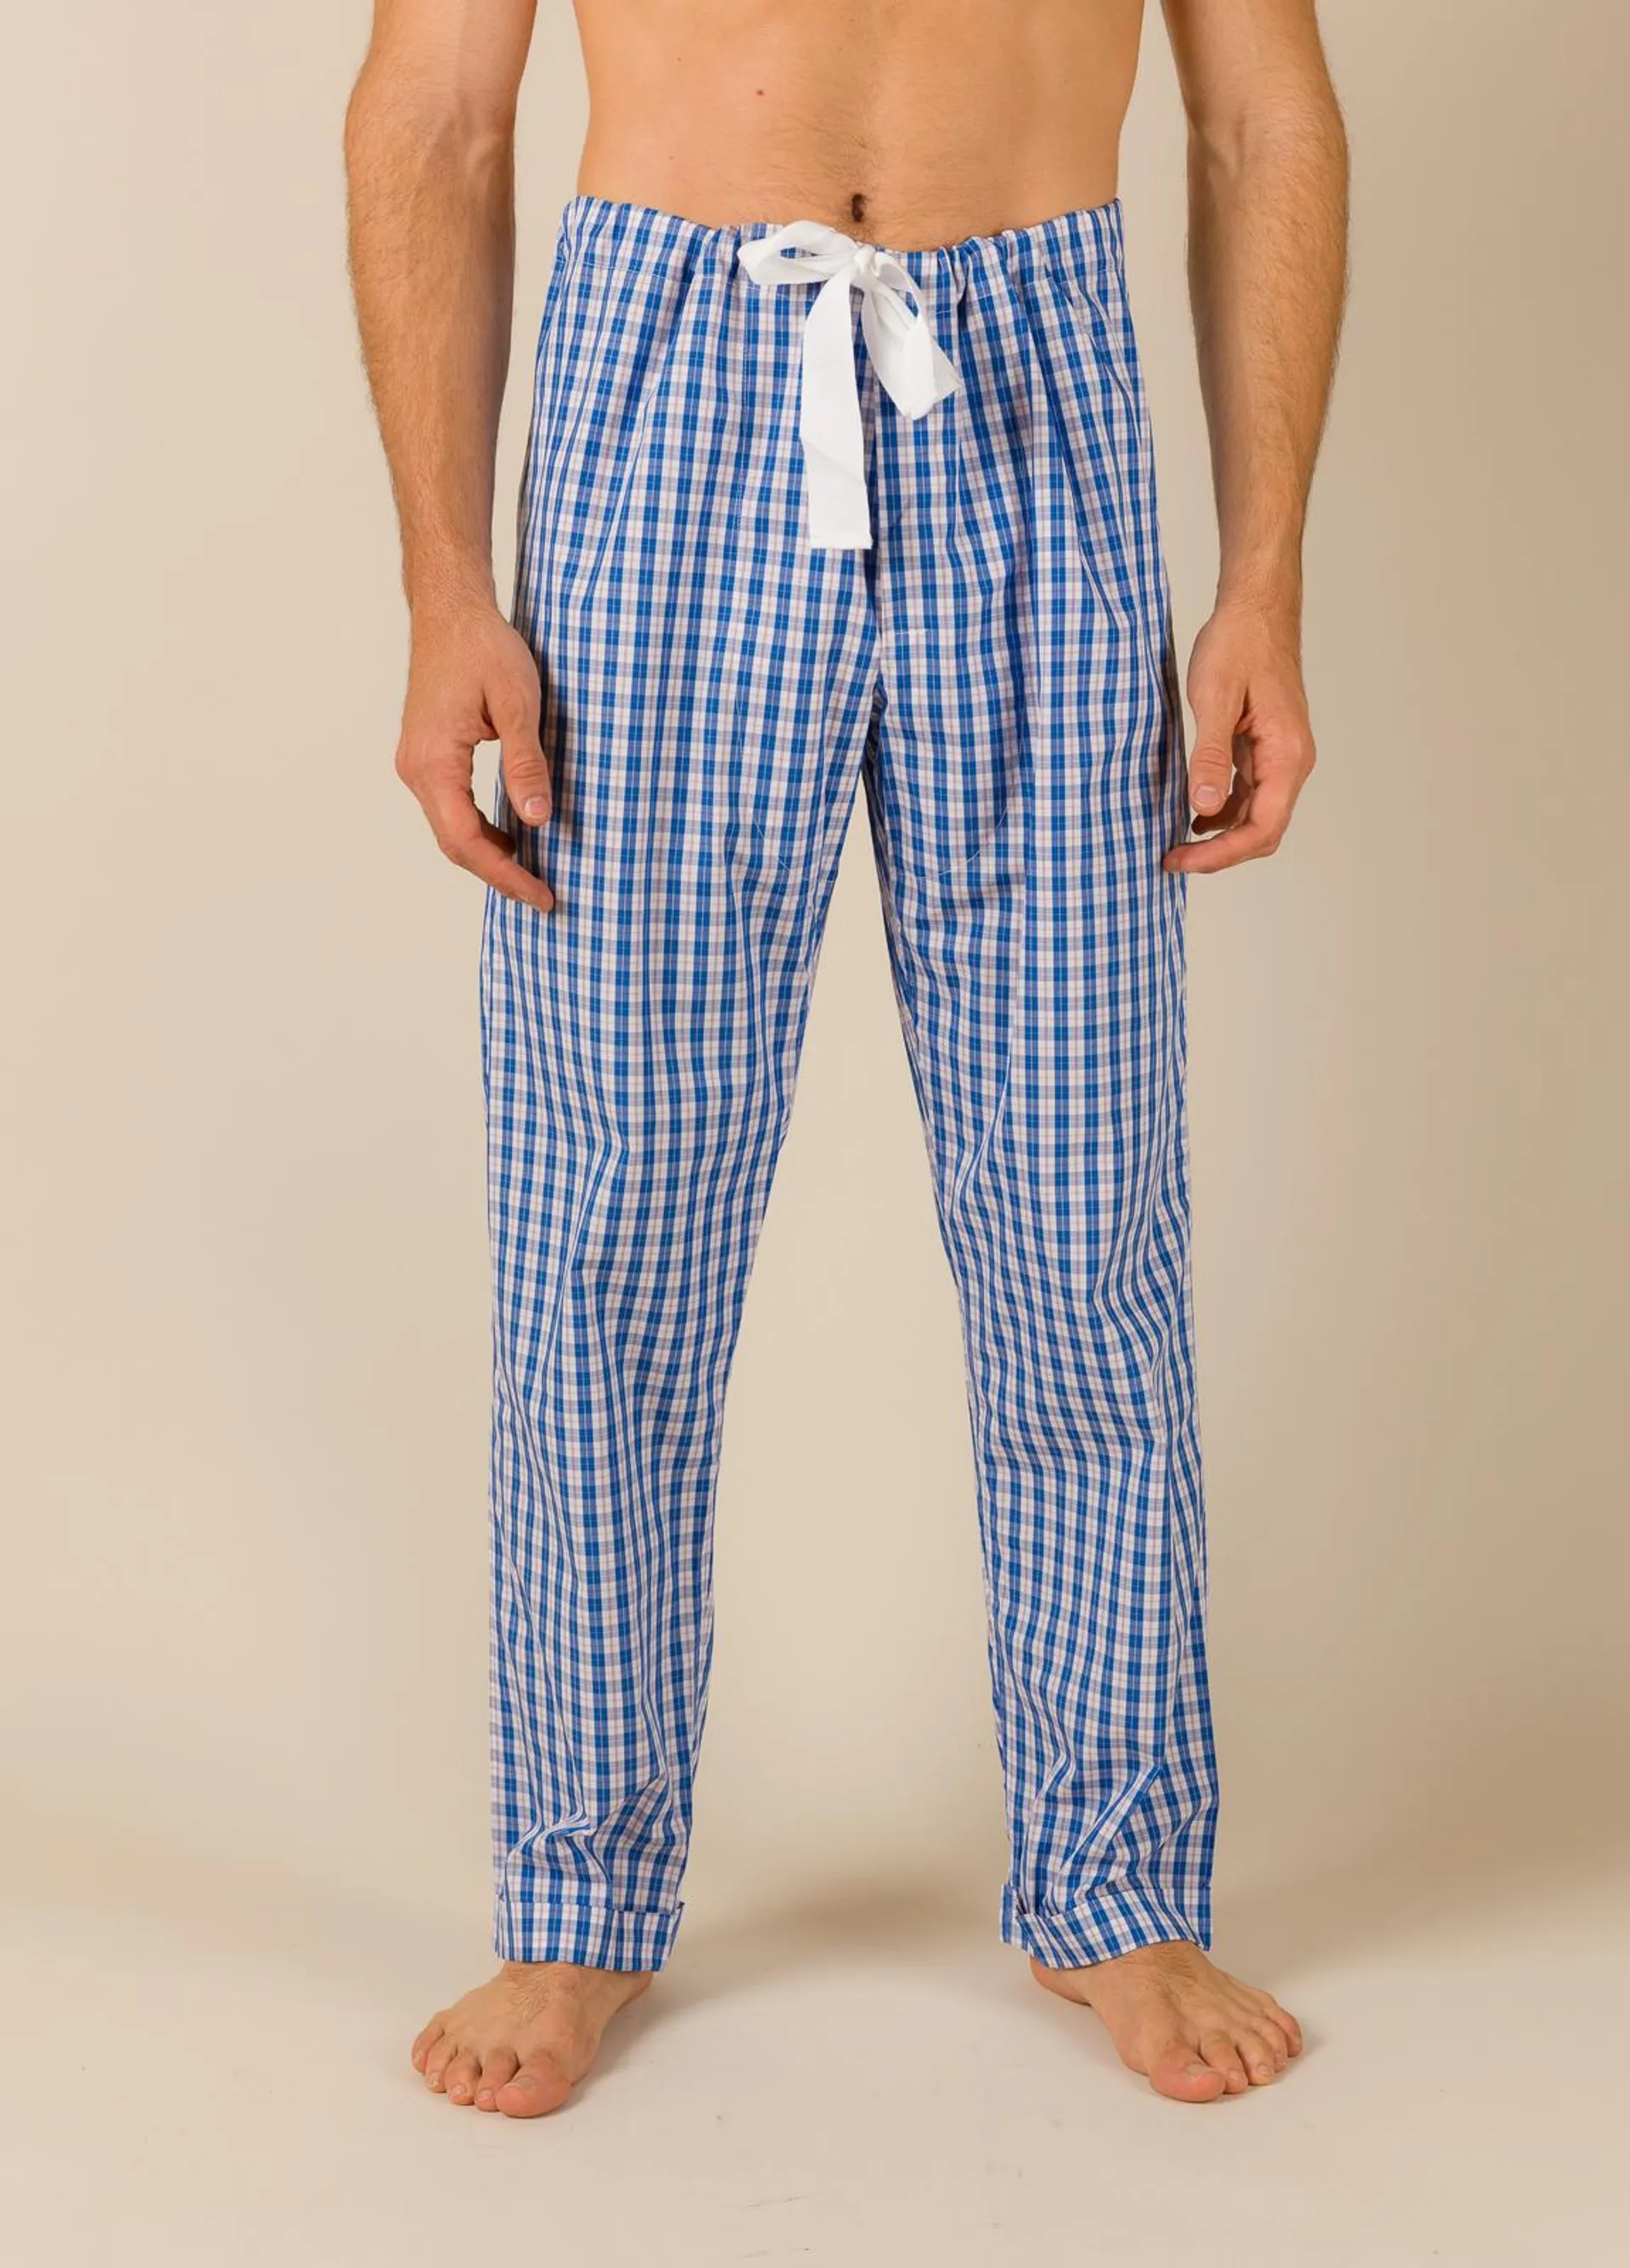 Pantalón largo de Pijama FUREST COLECCIÓN cuadros azul con funda incluida